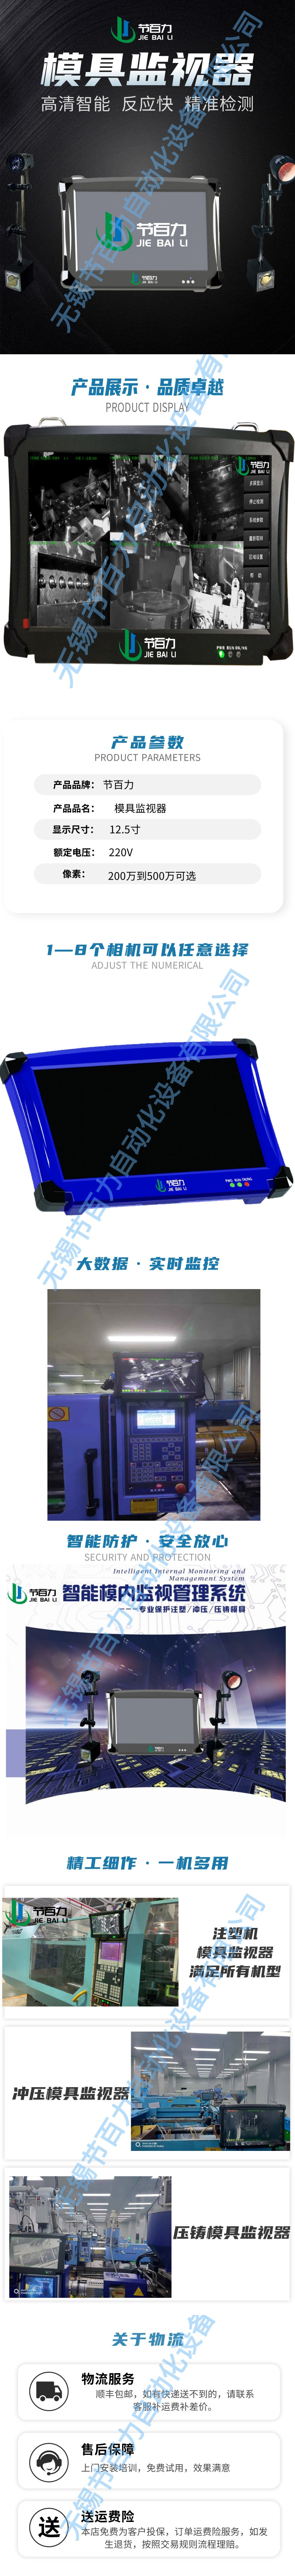 节百力JBL-600模具监视器品牌厂家  模内监控器 模具保护器  注塑机模内监控器 冲压模具检测 压铸模内监视器示例图1